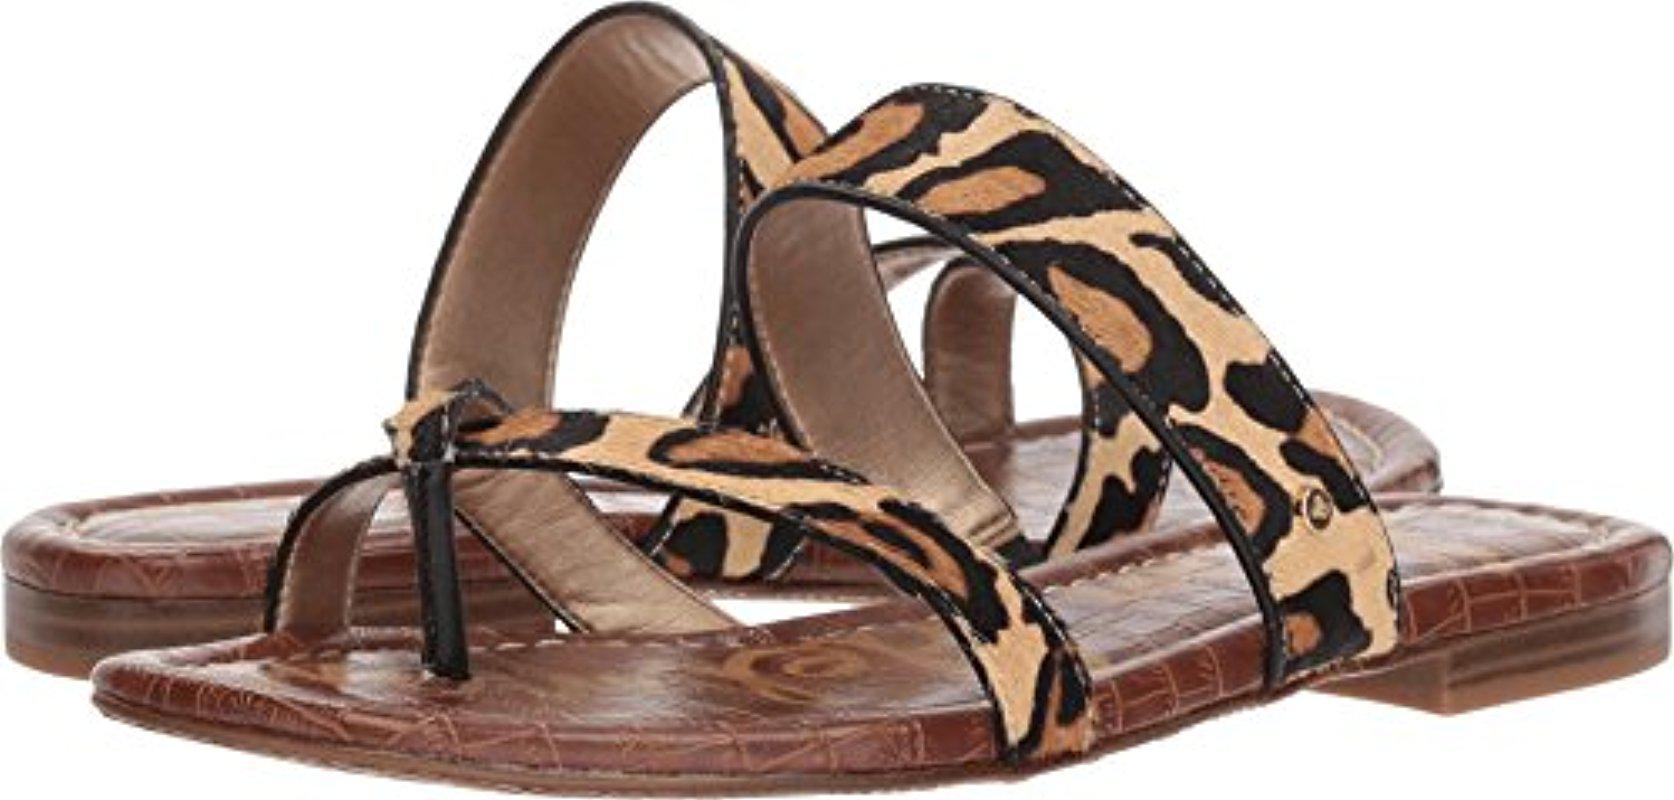 sam edelman women's bernice slide sandal